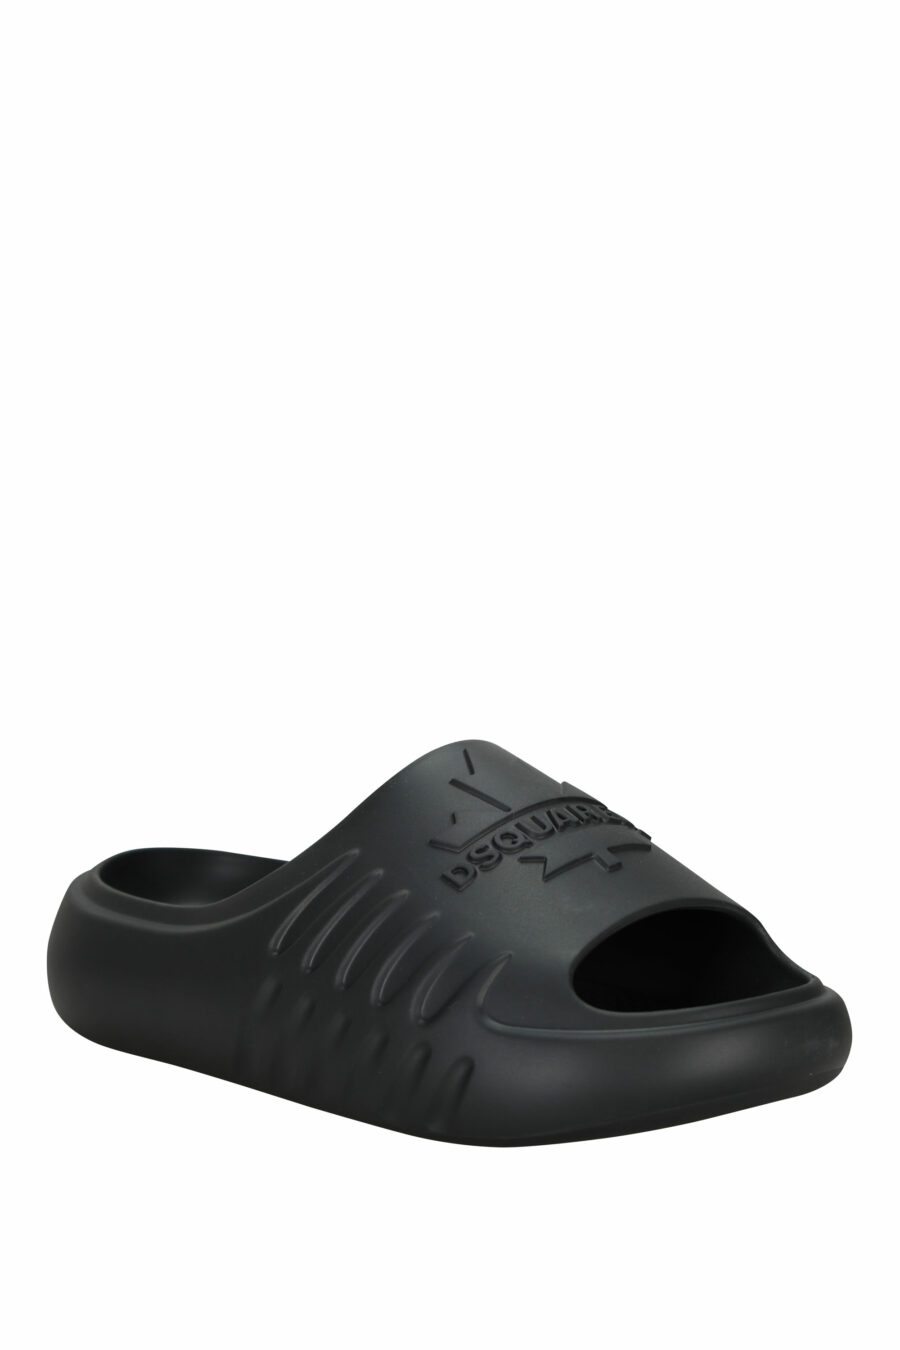 Schwarze Gummi-Flip-Flops mit einfarbigem Logo - 8055777295403 1